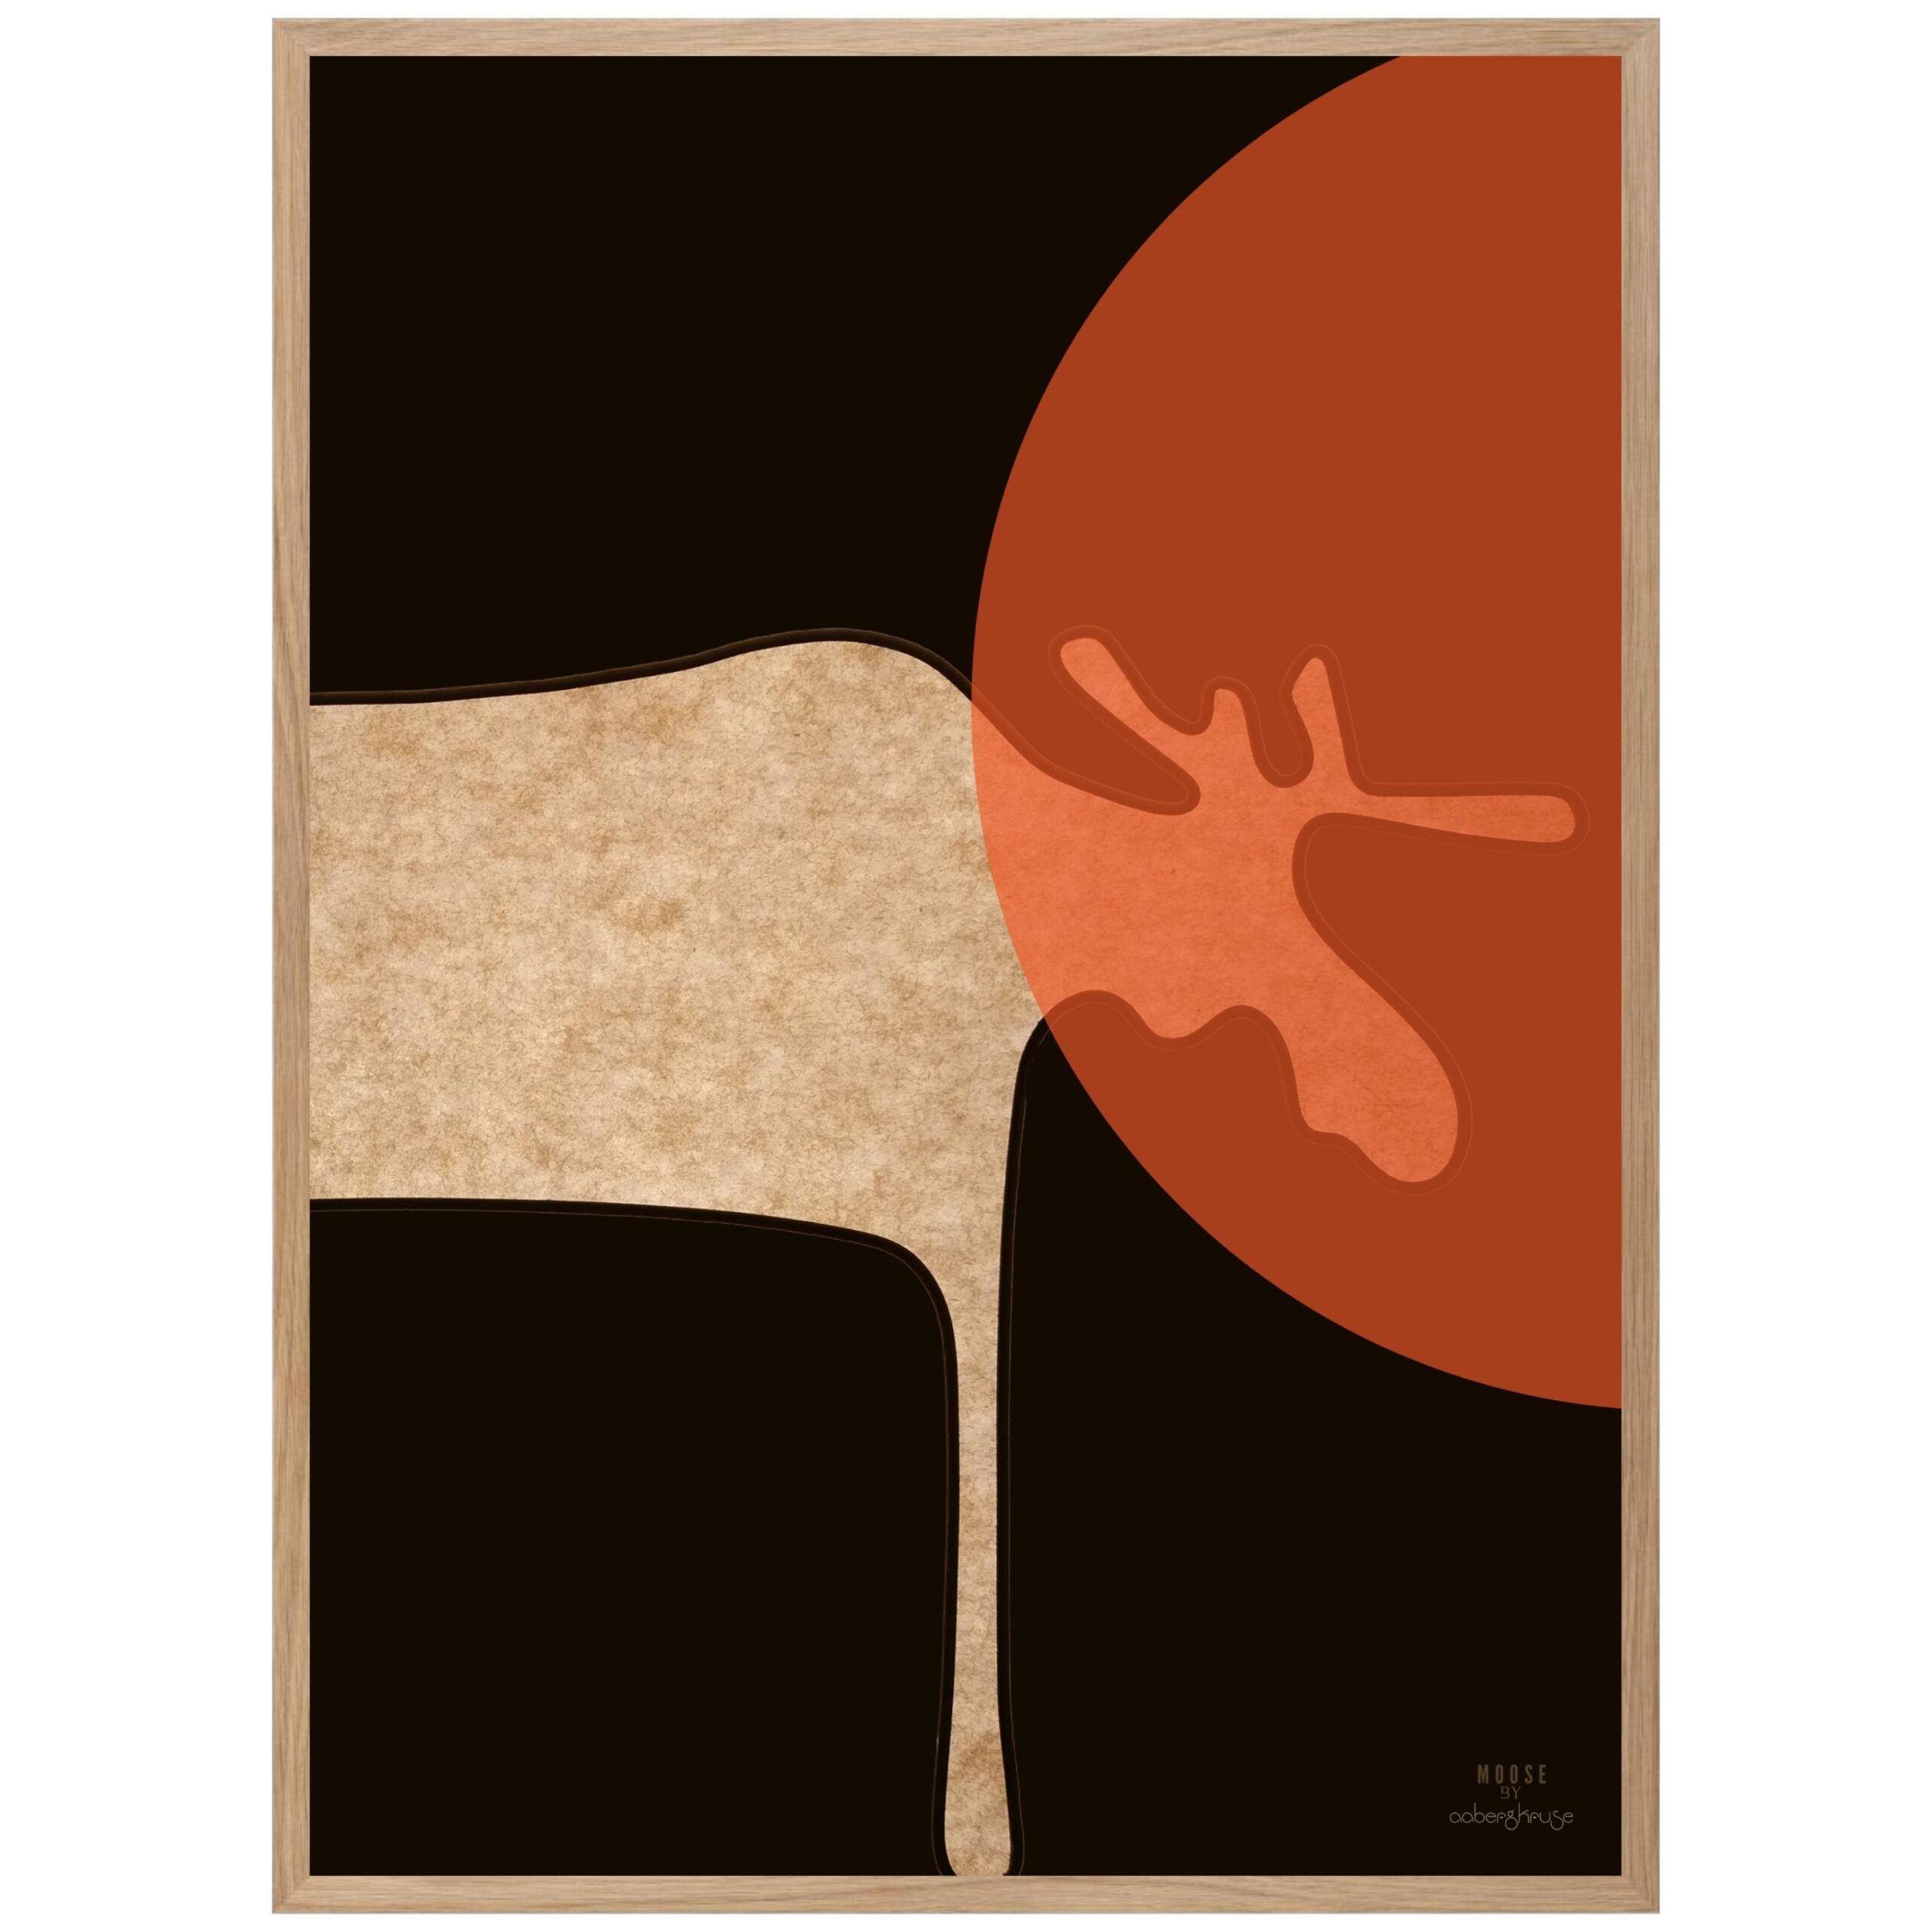 Et motiv af en mandig elg. En kunstplakat fra AabergKruse i sort og rød farve.